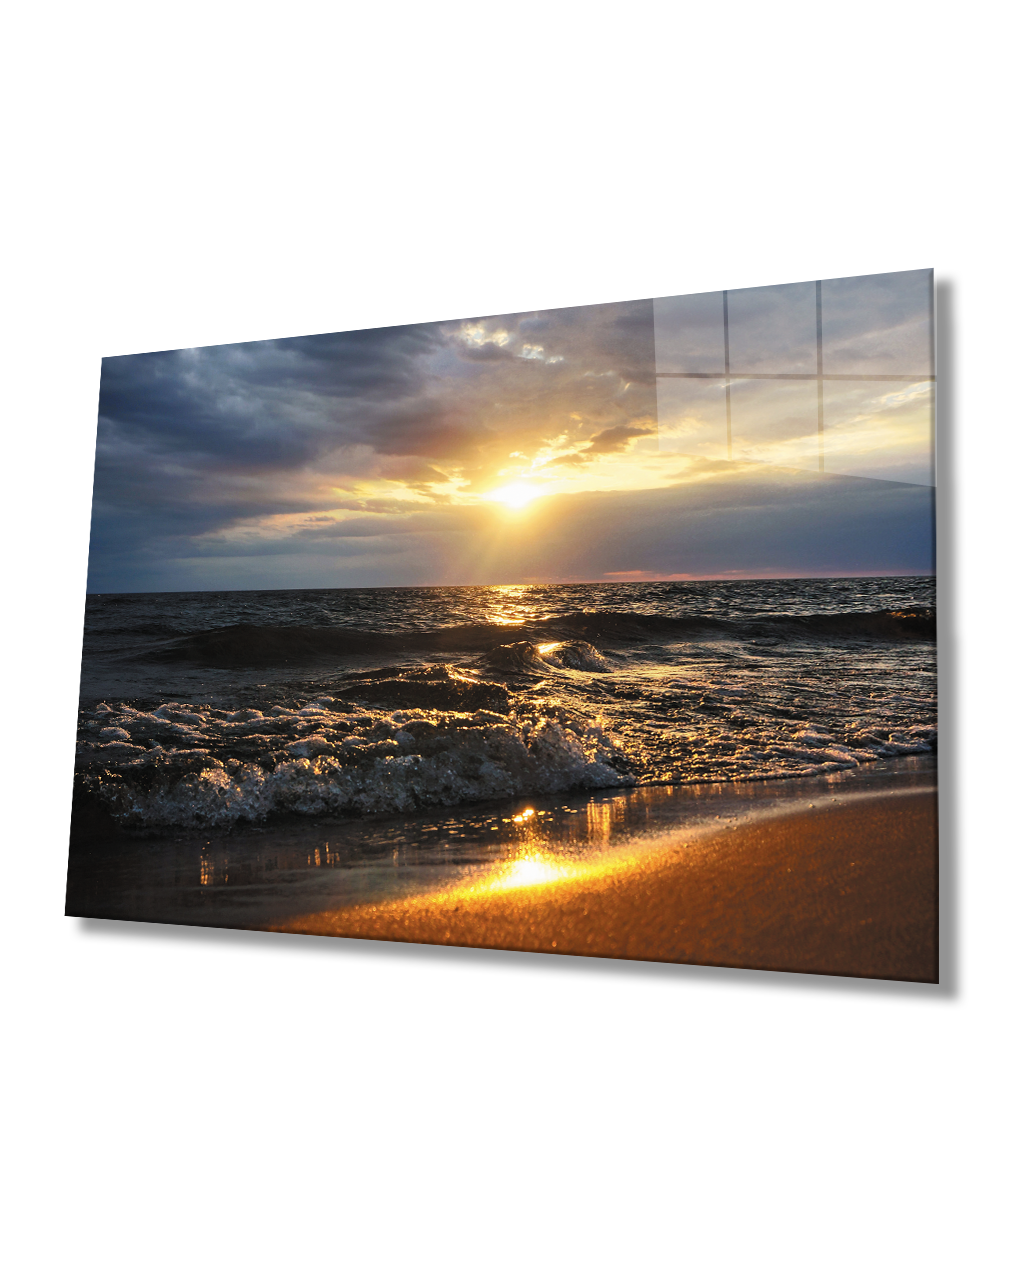 Deniz Dalga Sahil Gün Batımı Cam Tablo  4mm Dayanıklı Temperli Cam Sea Wave Beach Sunset Glass Painting 4mm Durable Tempered Glass